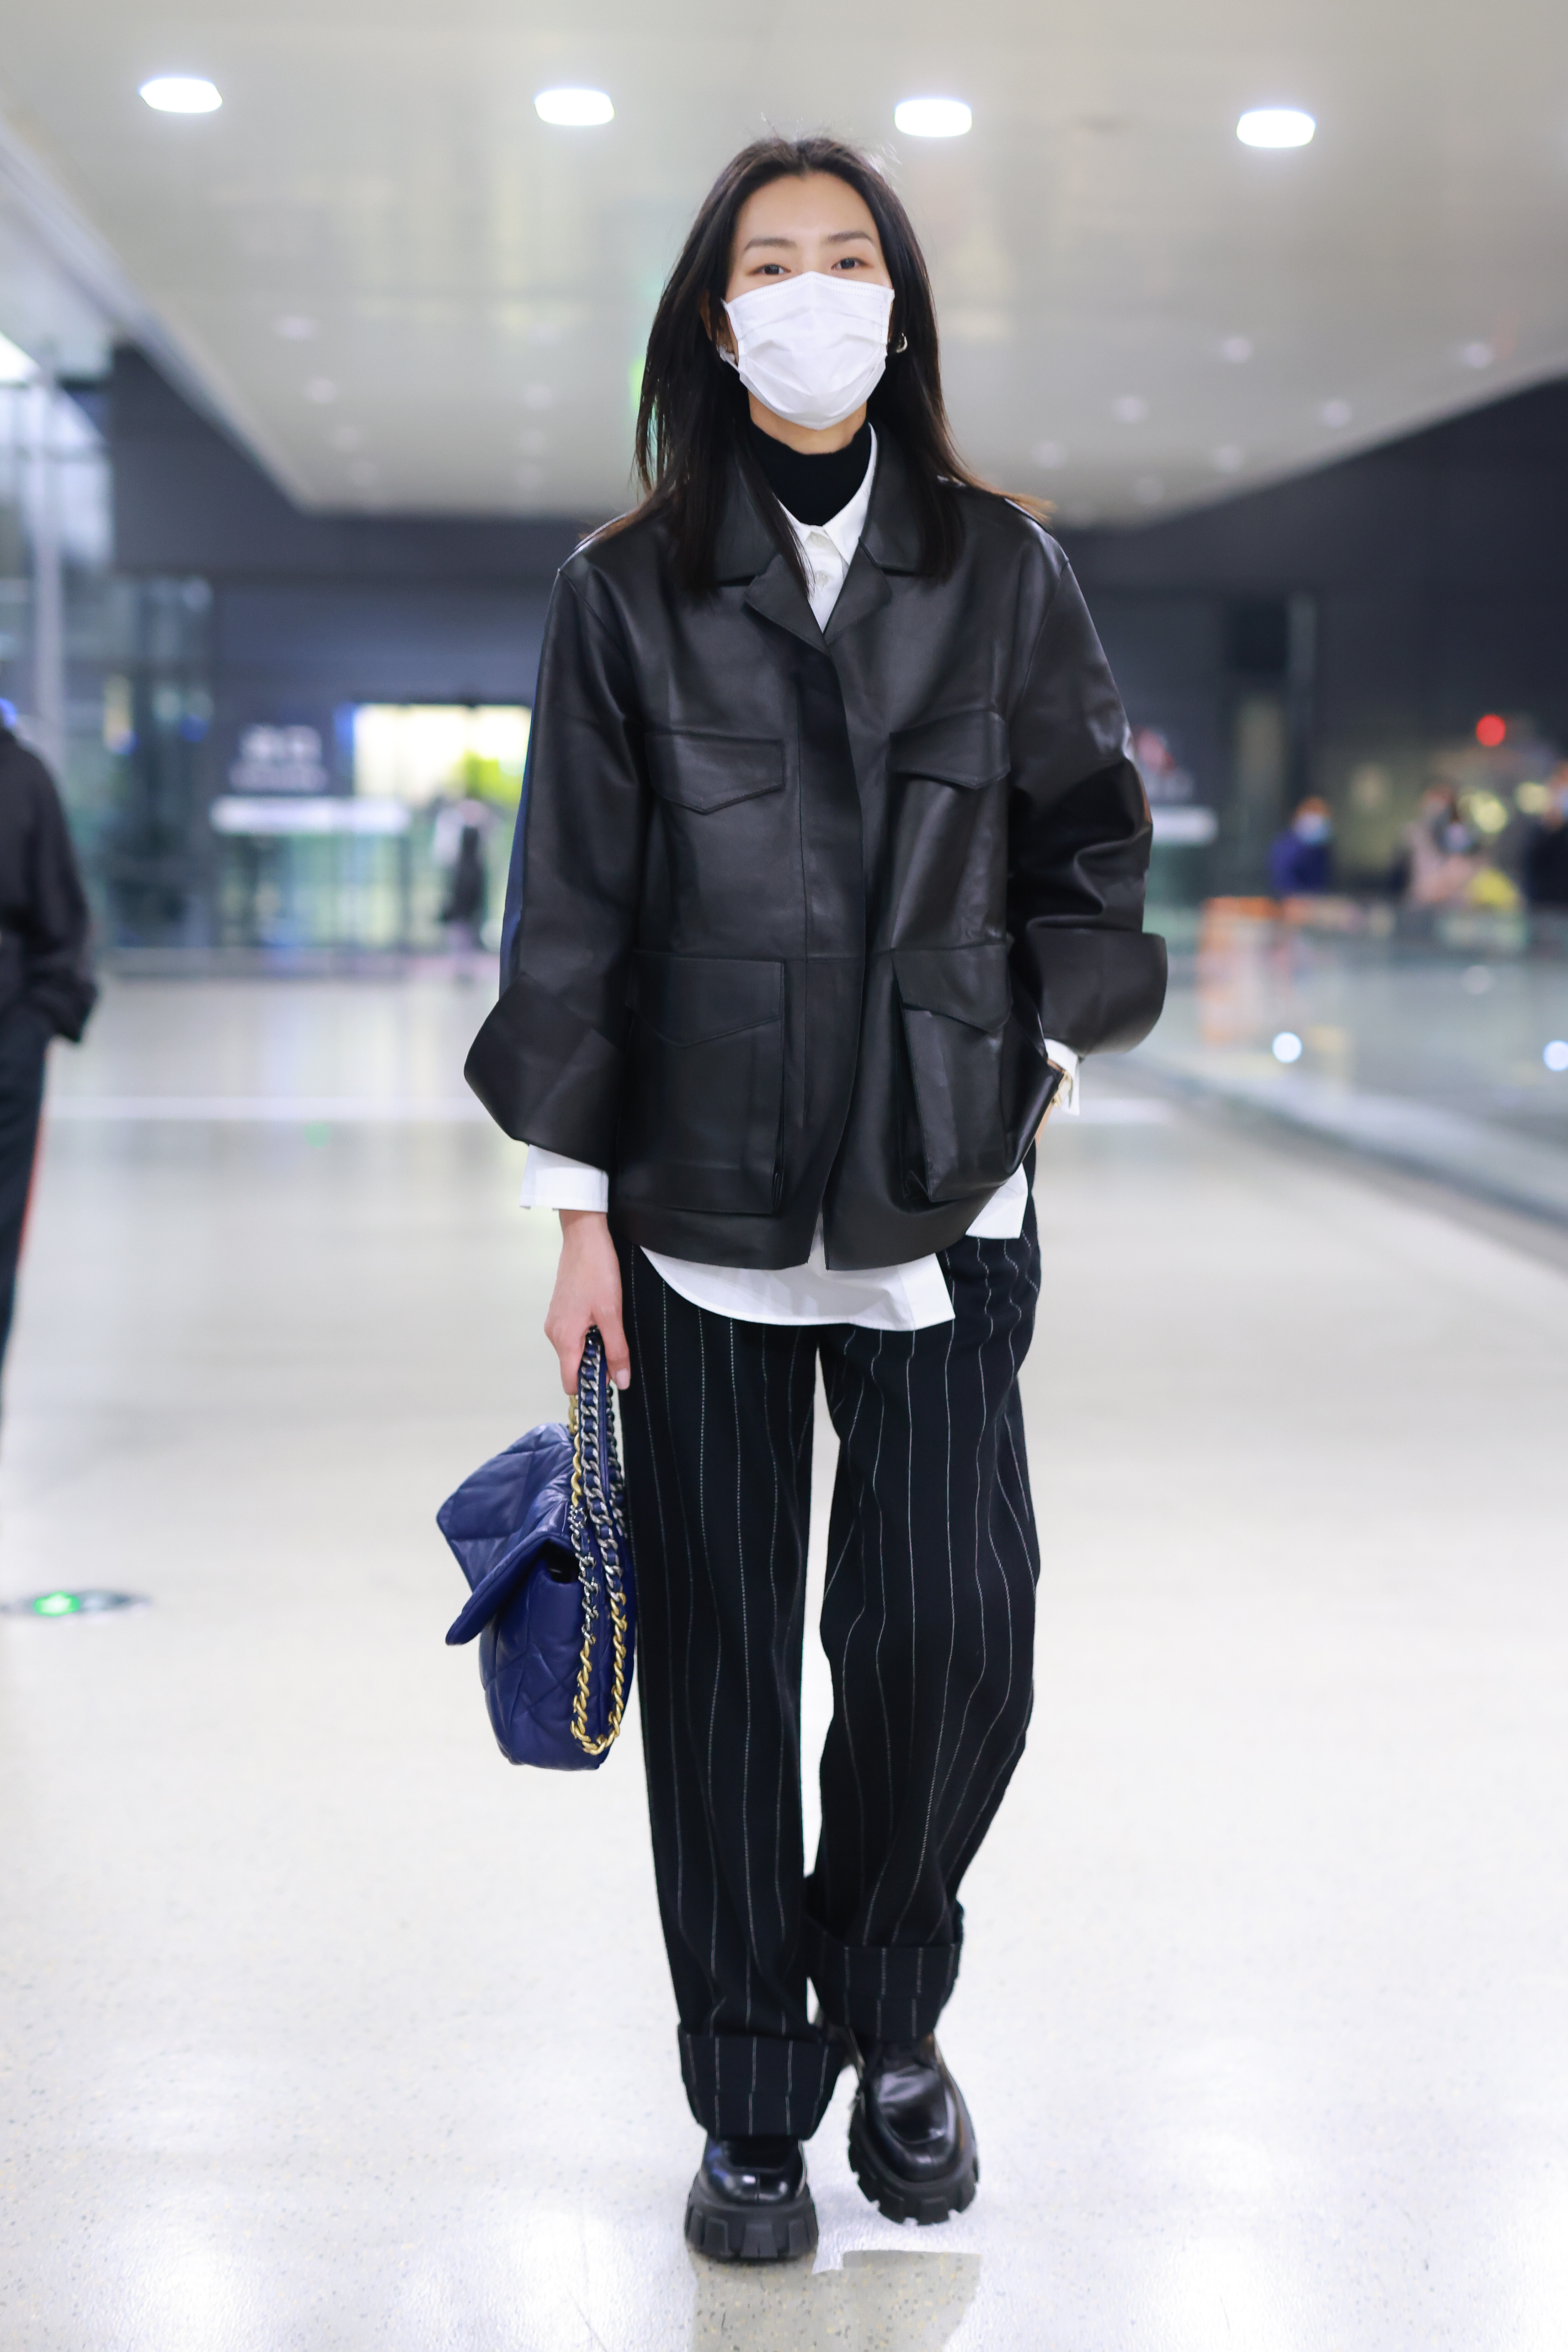 Liu Wen's Best Winter Style